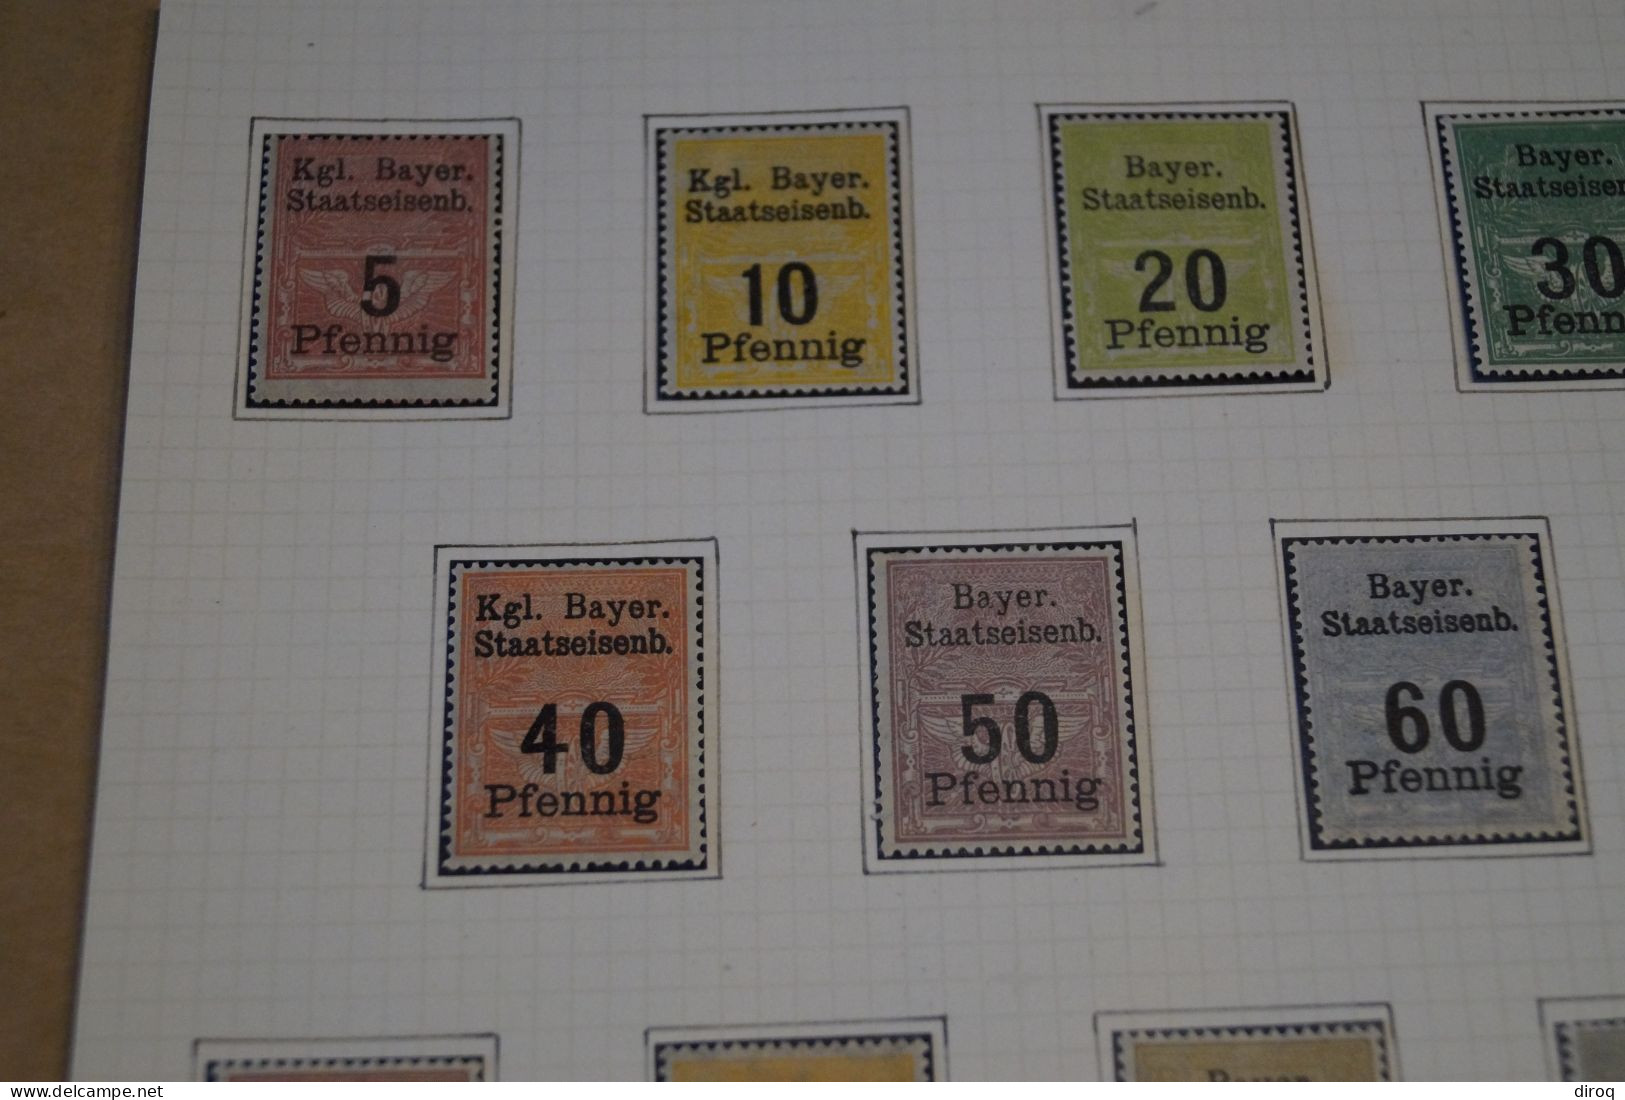 Très Belle Série 14 Timbres,Railway Stamps Bayer,chemin De Fer,1900,neuf Sur Charnière,bel état De Collection - Ungebraucht